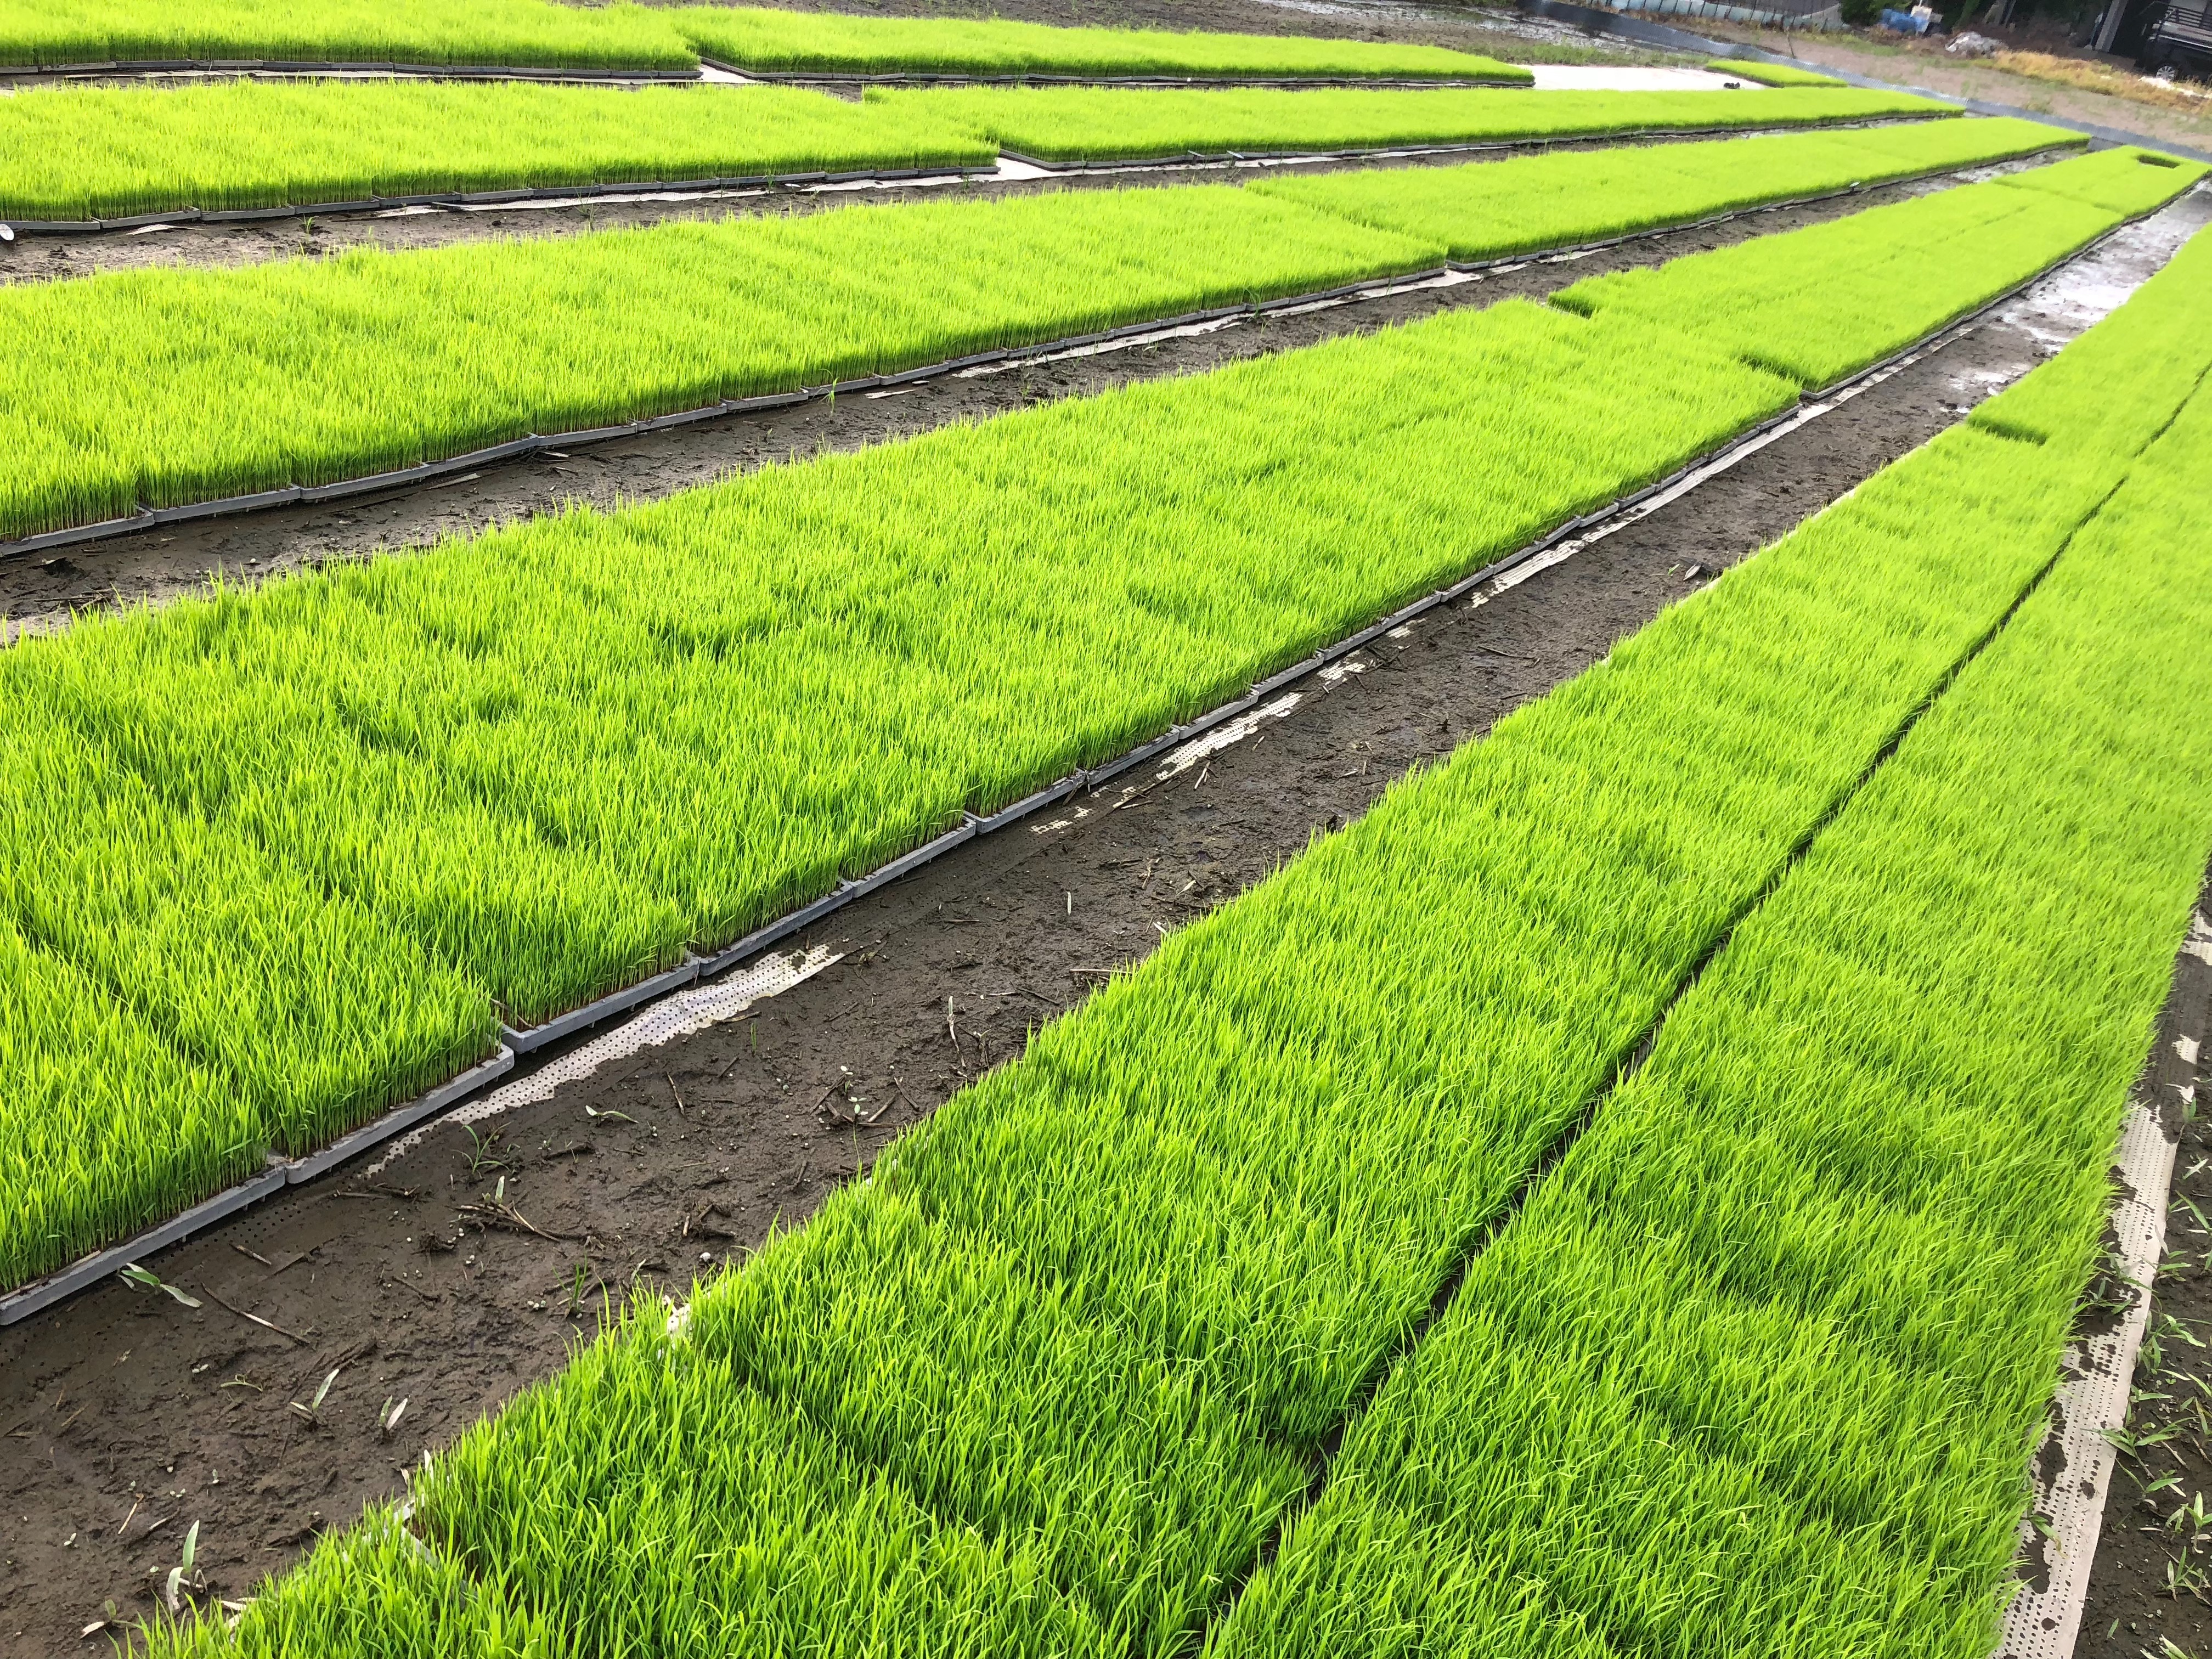 熊本の若手生産者が手がける低タンパク米のその後~HARVESTドリーム企画vol 3〜低タンパク米(LGCソフト)とは？？